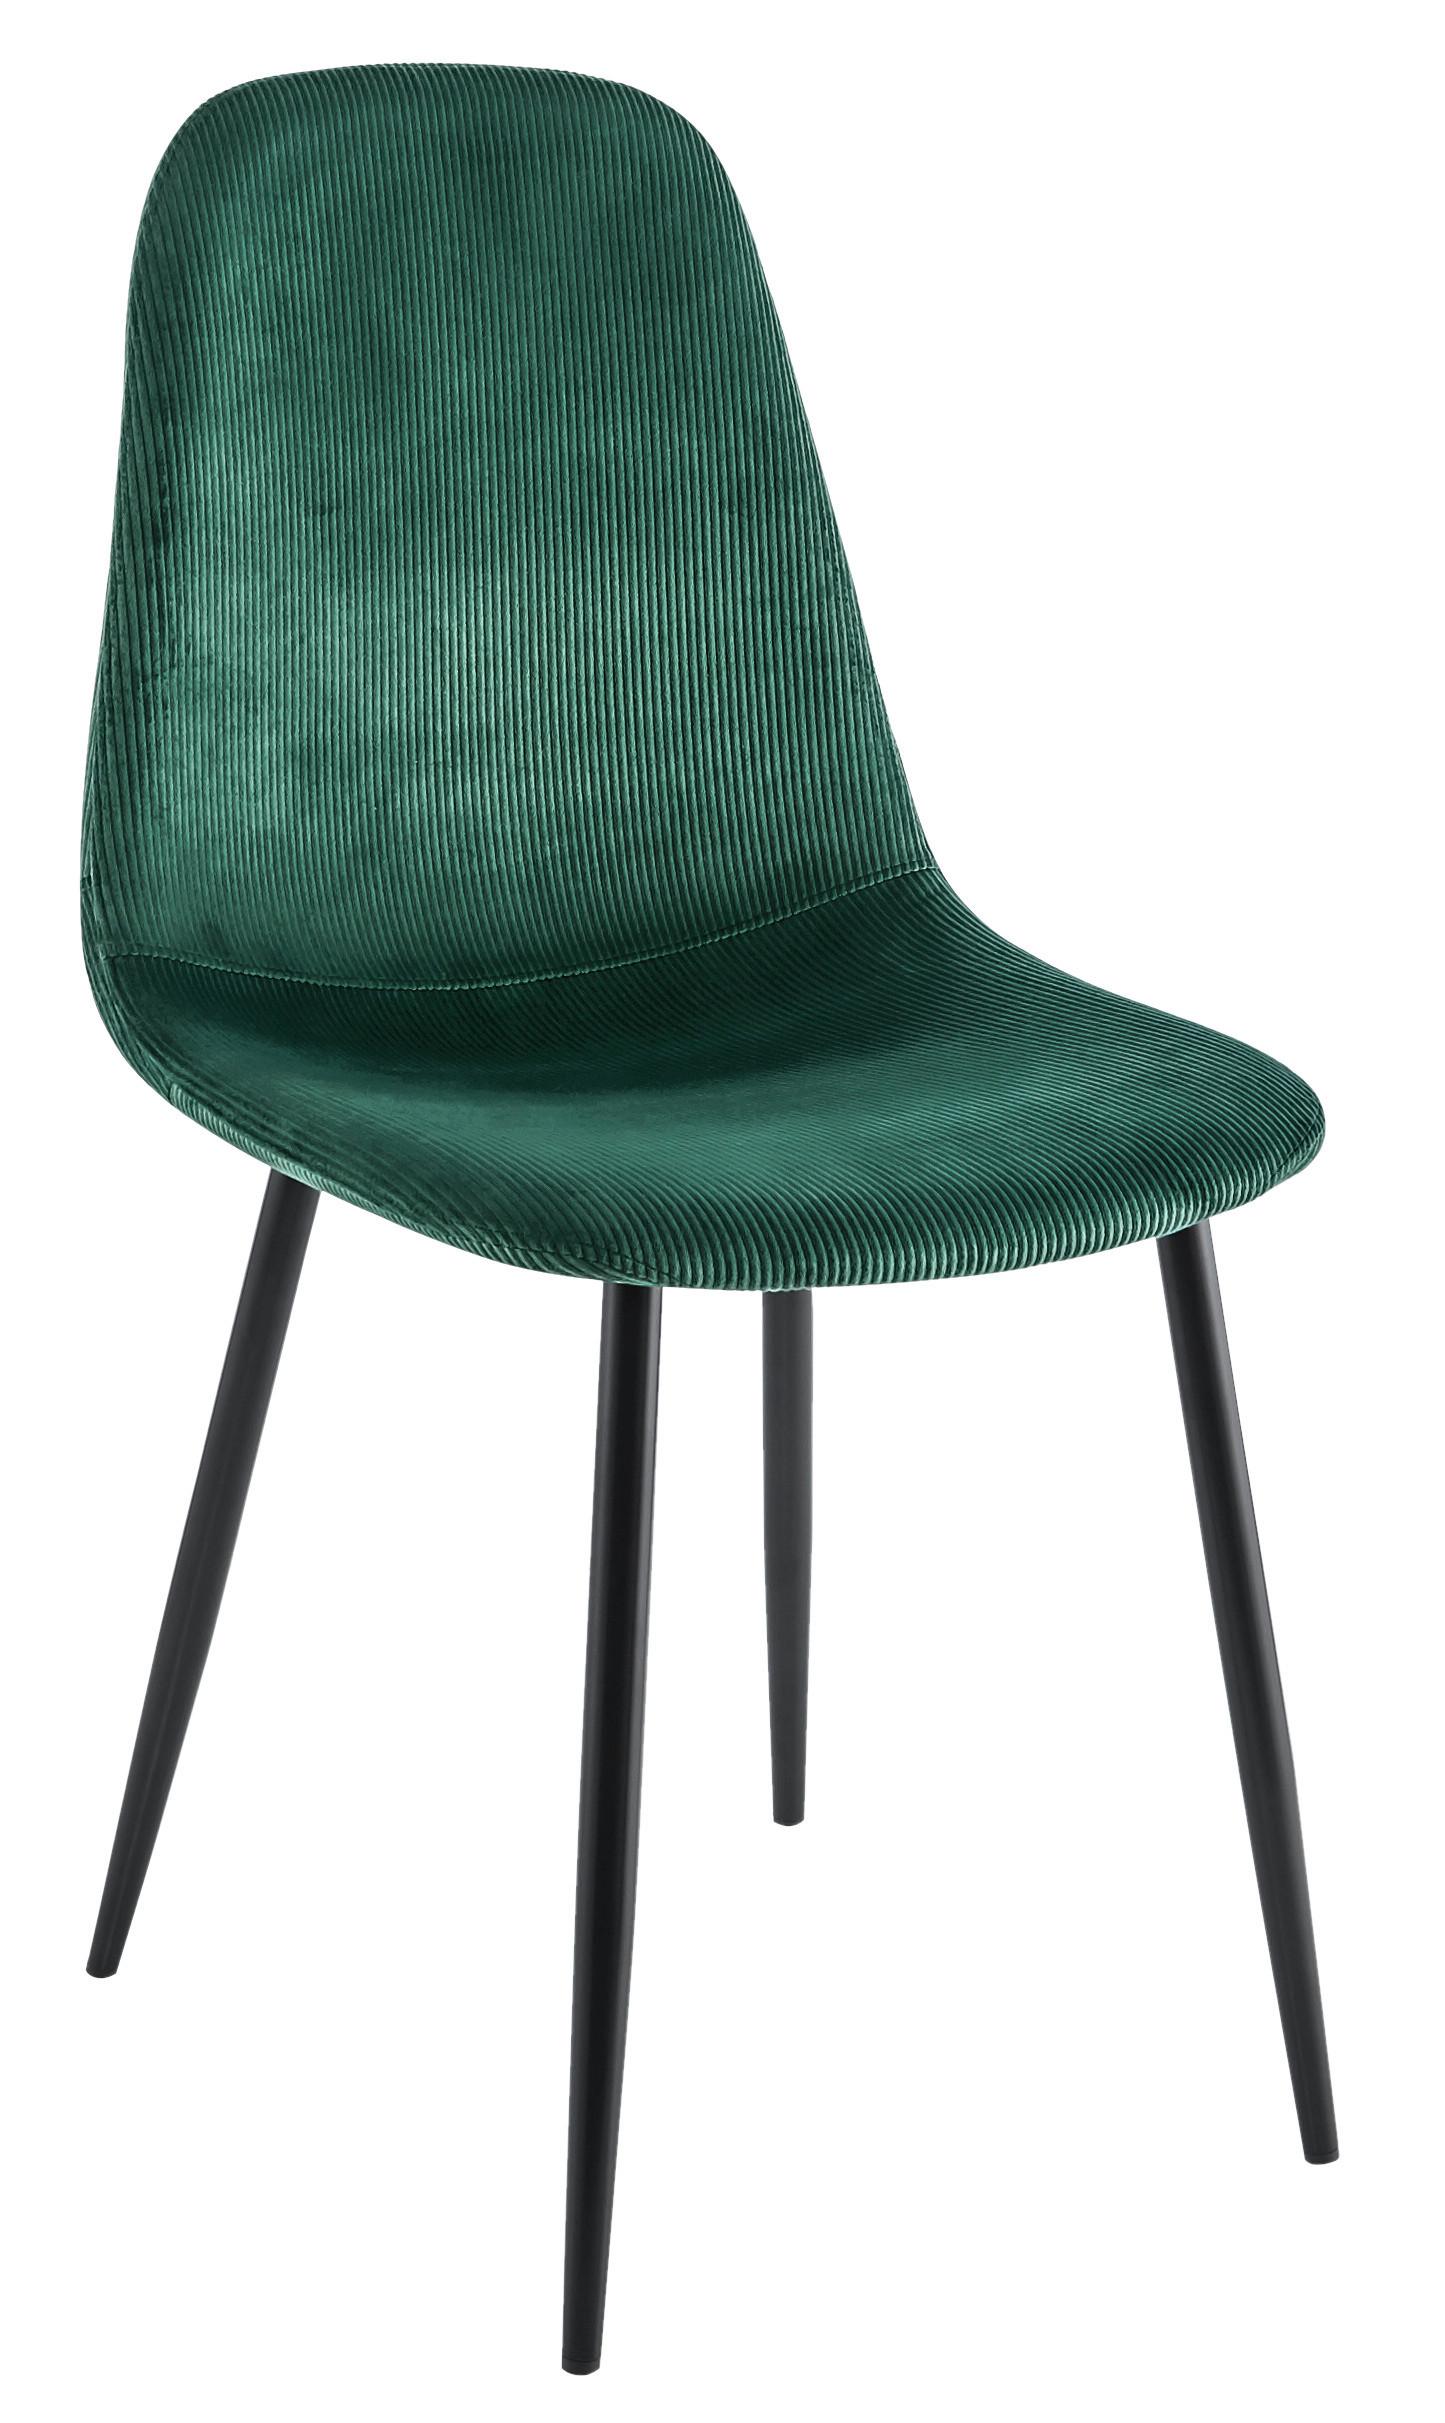 Stuhl aus Kord in Grün/Schwarz - Schwarz/Grün, MODERN, Textil/Metall (44,5/86,5/54cm) - Based